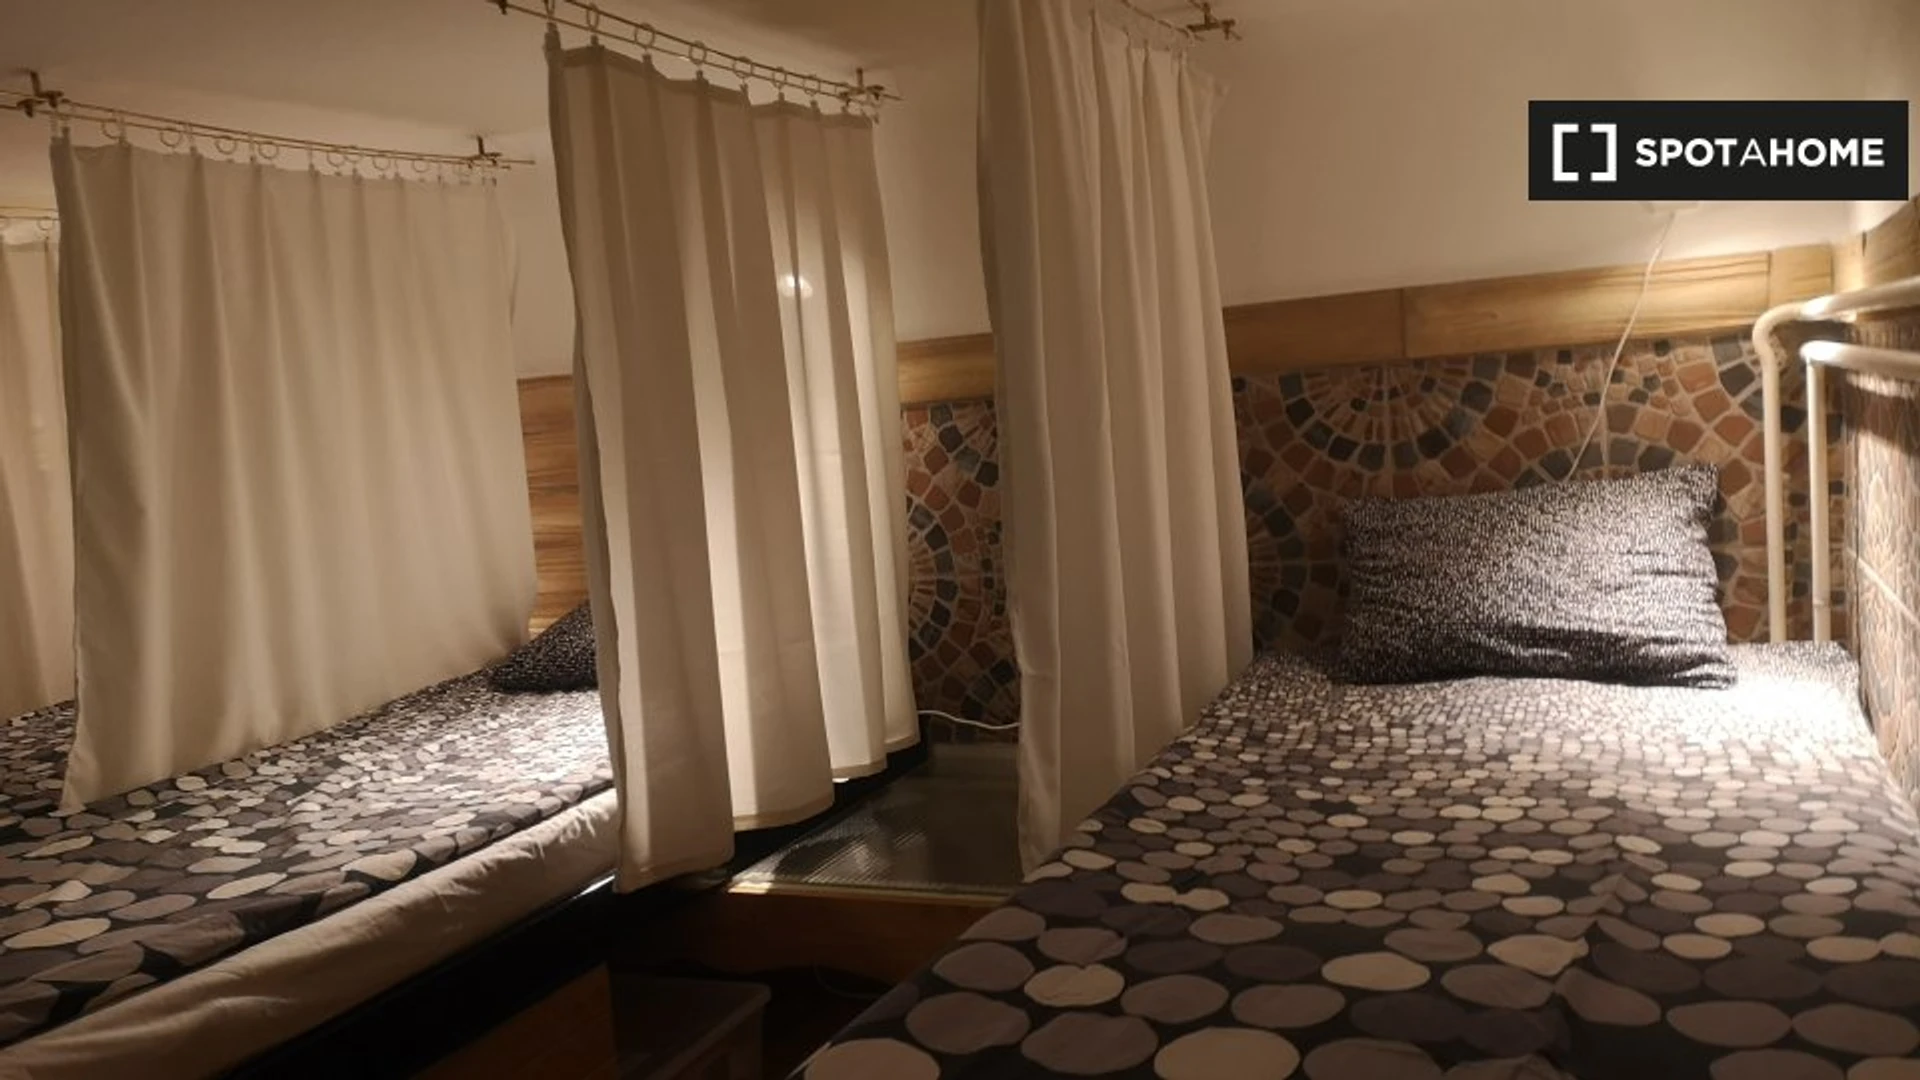 Budapest de ucuz özel oda